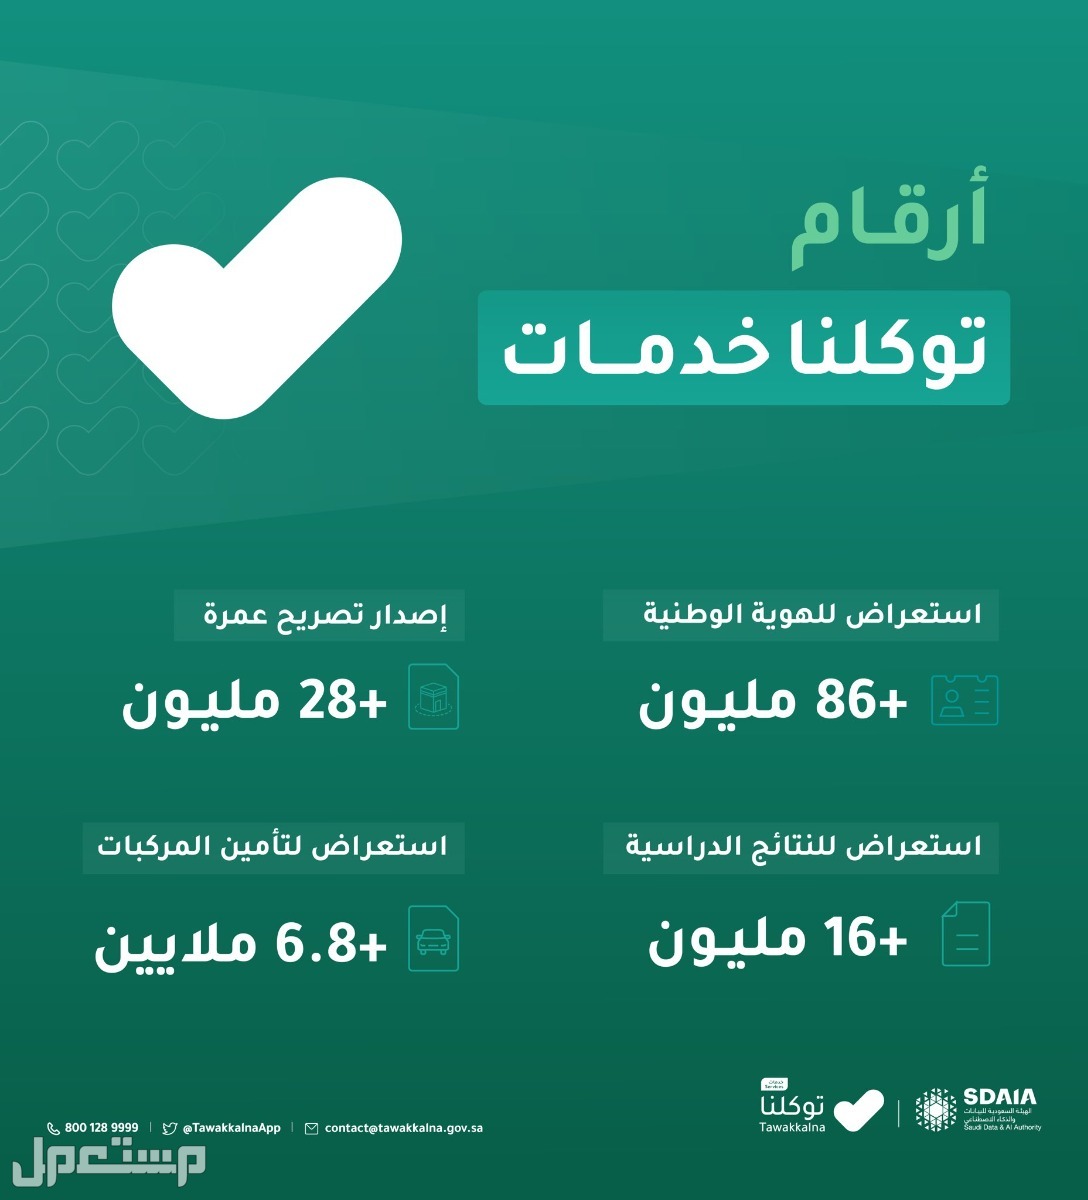 خطوات استعراض إعدادات الحساب في توكلنا خدمات في لبنان أرقام توكلنا